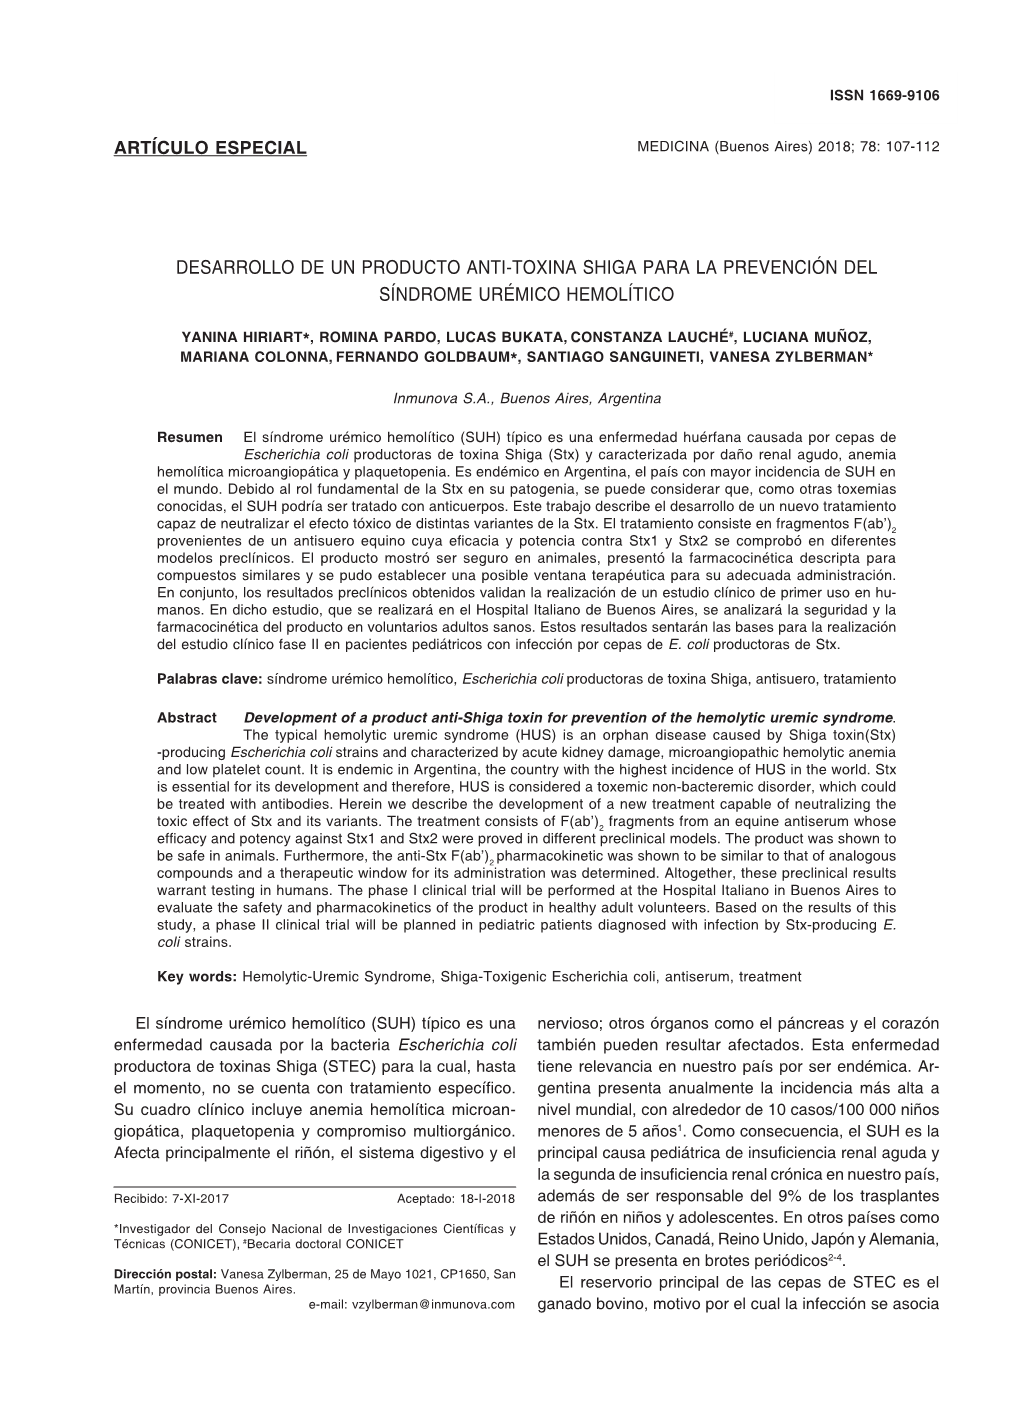 Artículo Especial Desarrollo De Un Producto Anti-Toxina Shiga Para La Prevención Del Síndrome Urémico Hemolítico